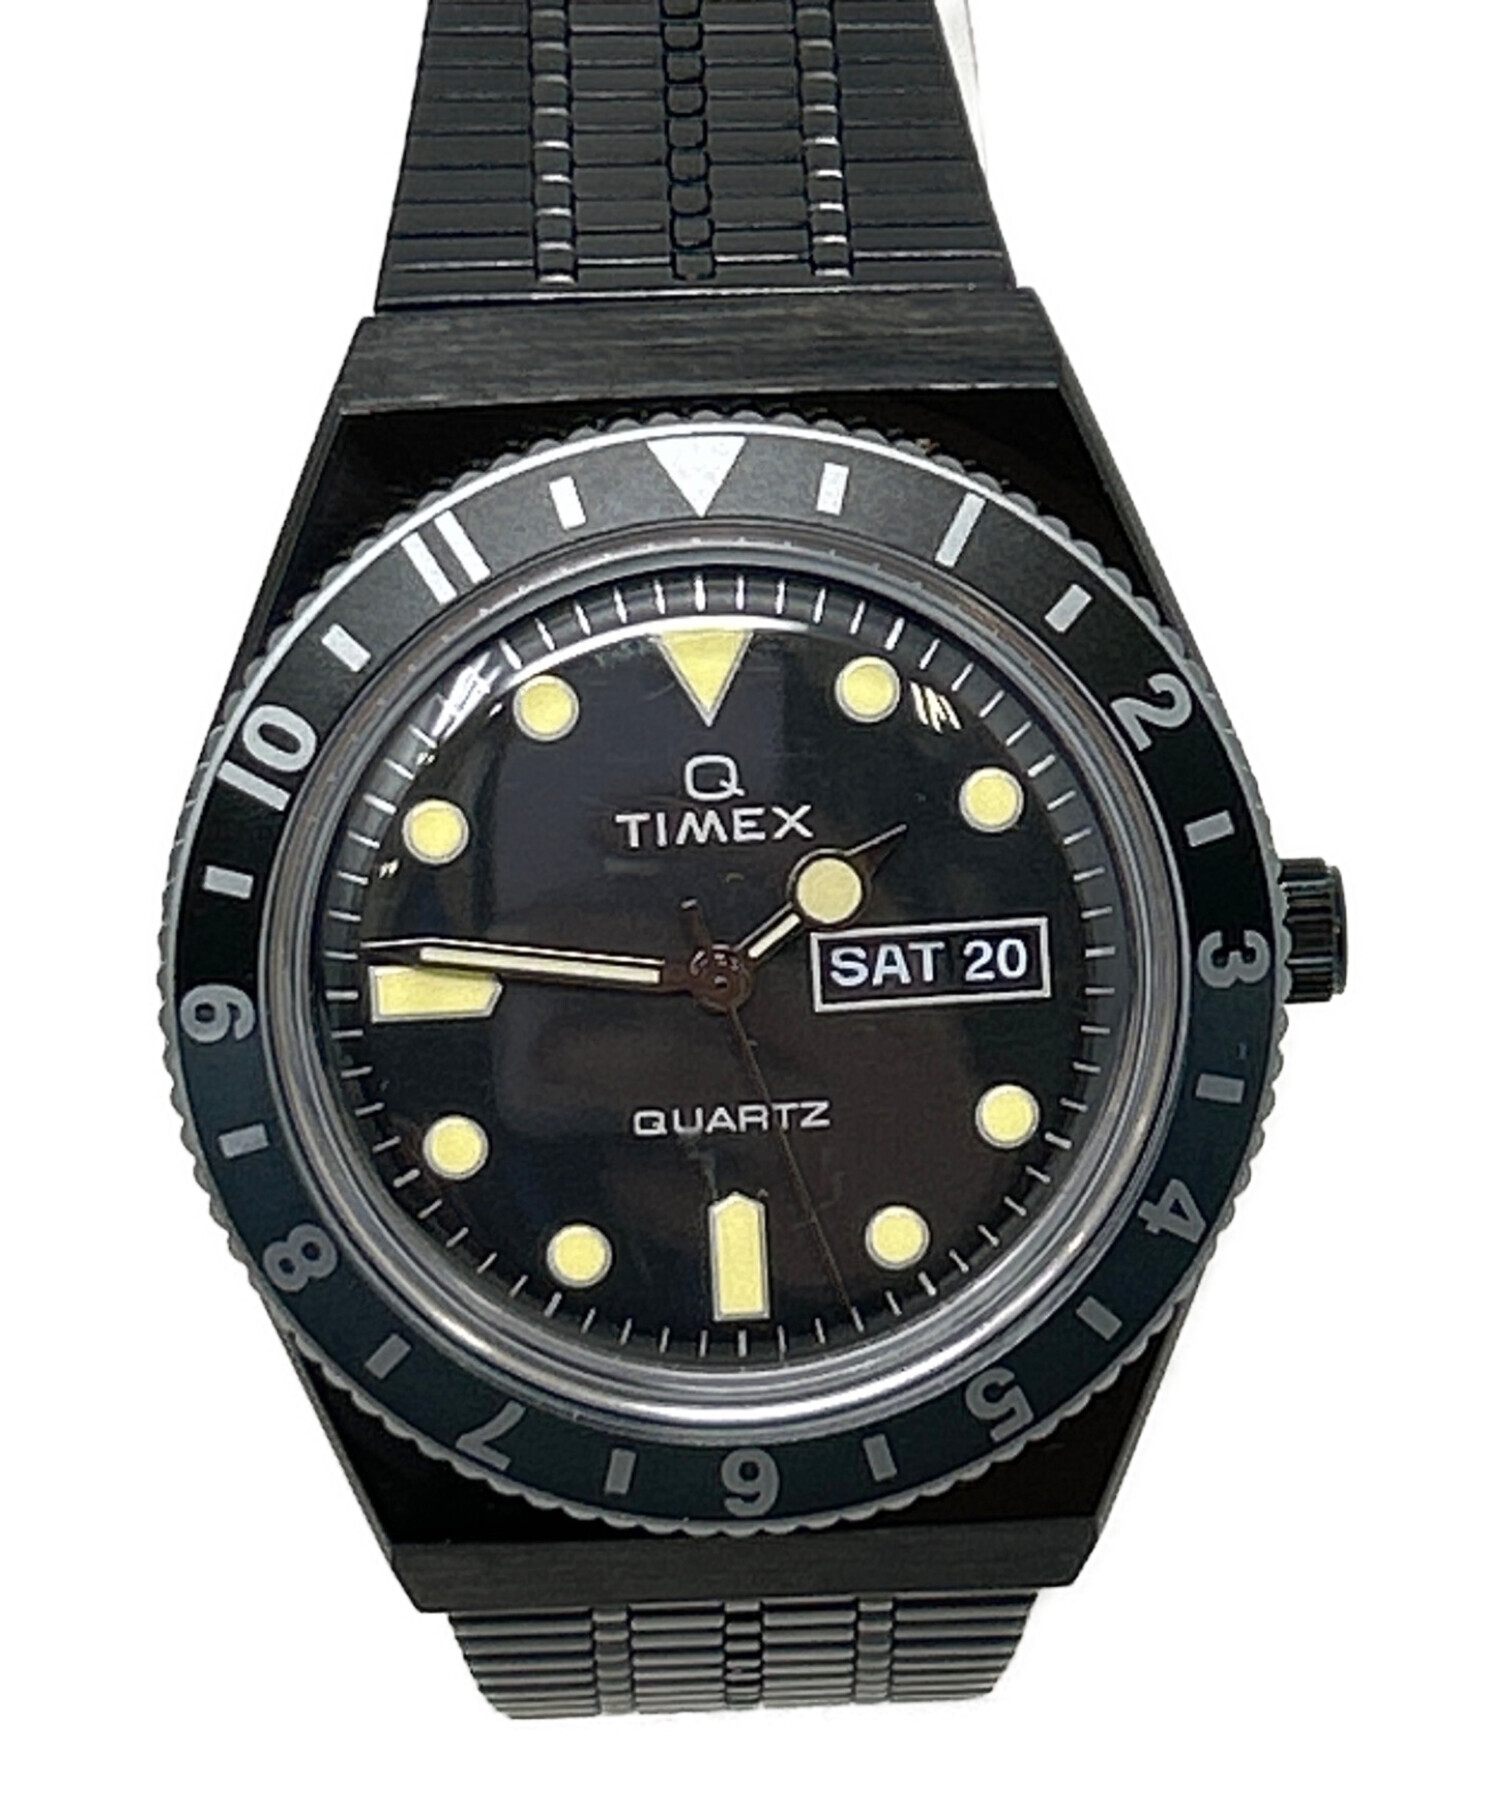 TIMEX (タイメックス) 腕時計